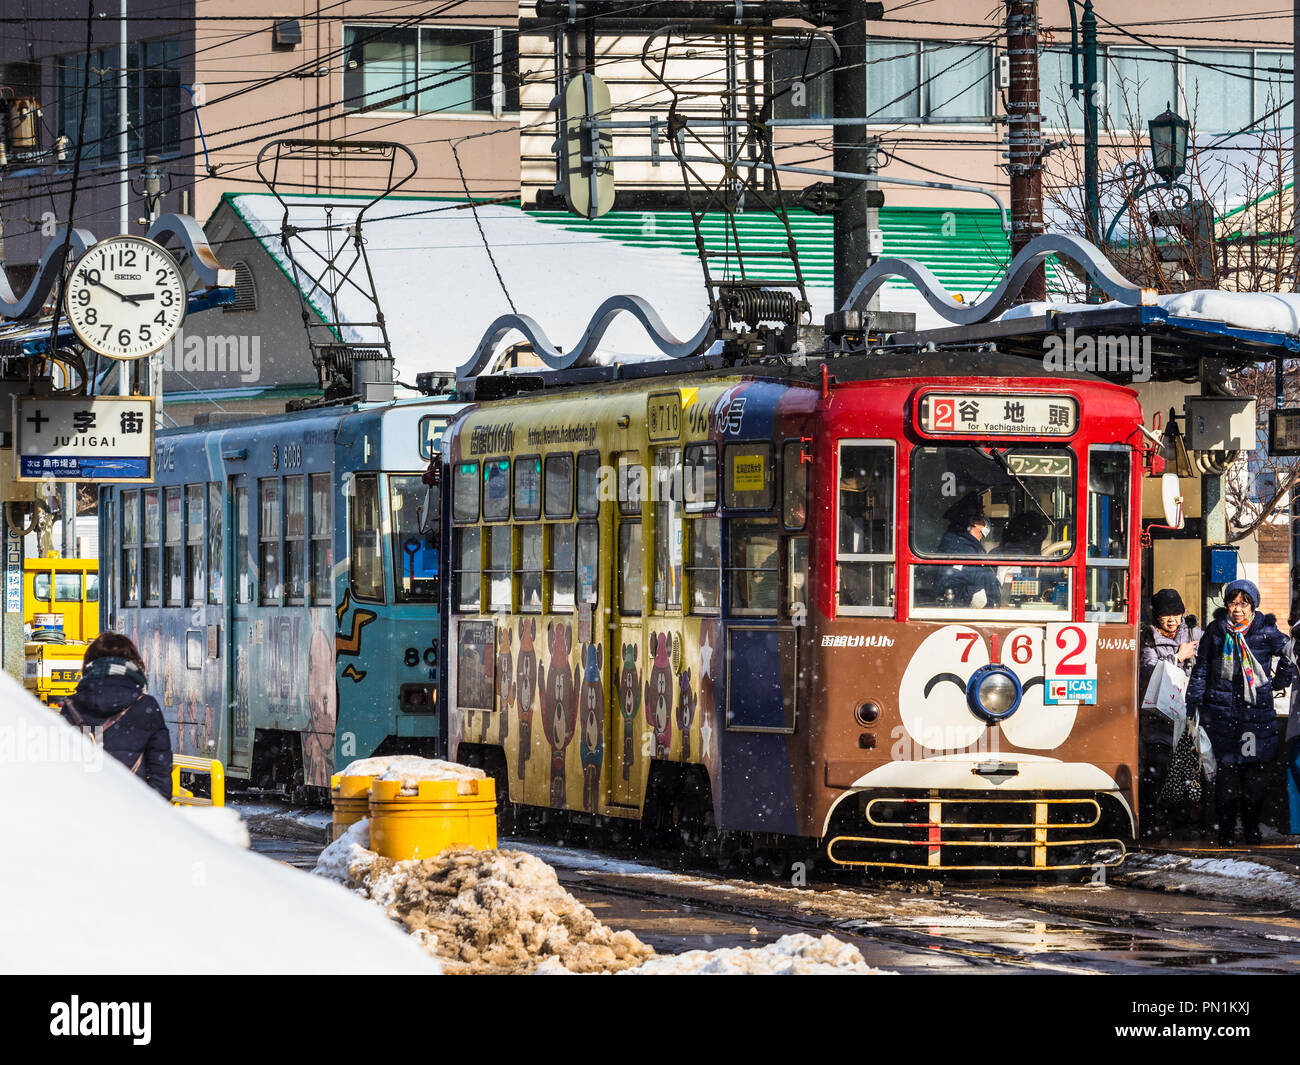 Tram Hakodate Hokkaido in Giappone - fermata del tram nel porto giapponese città di Hakodate sull'isola settentrionale di Hokkaido Foto Stock